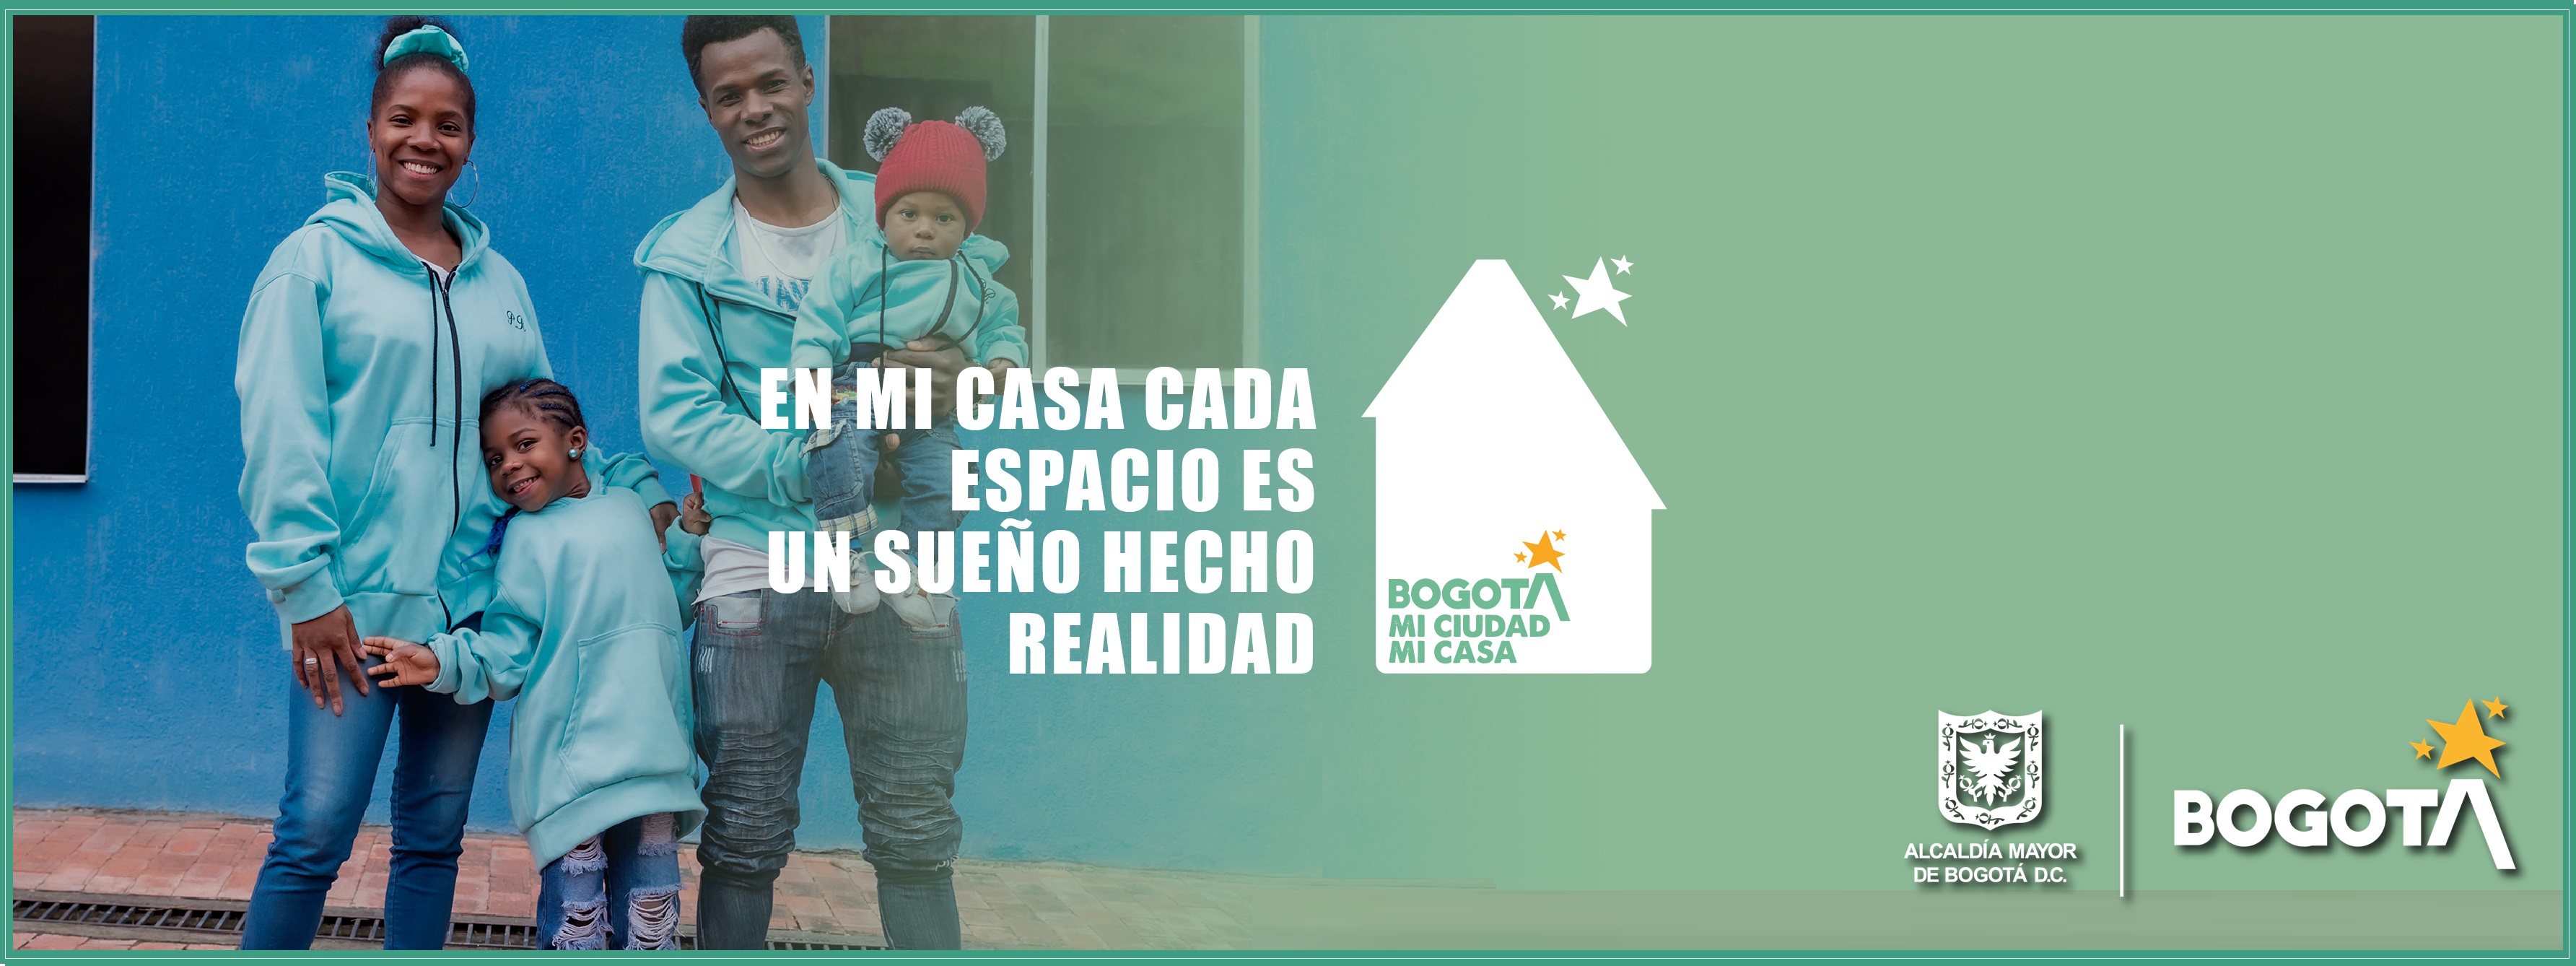 Esta es una iniciativa de la Alcaldía de Bogotá que busca fortalecer el sentido de pertenencia de los habitantes de la capital.